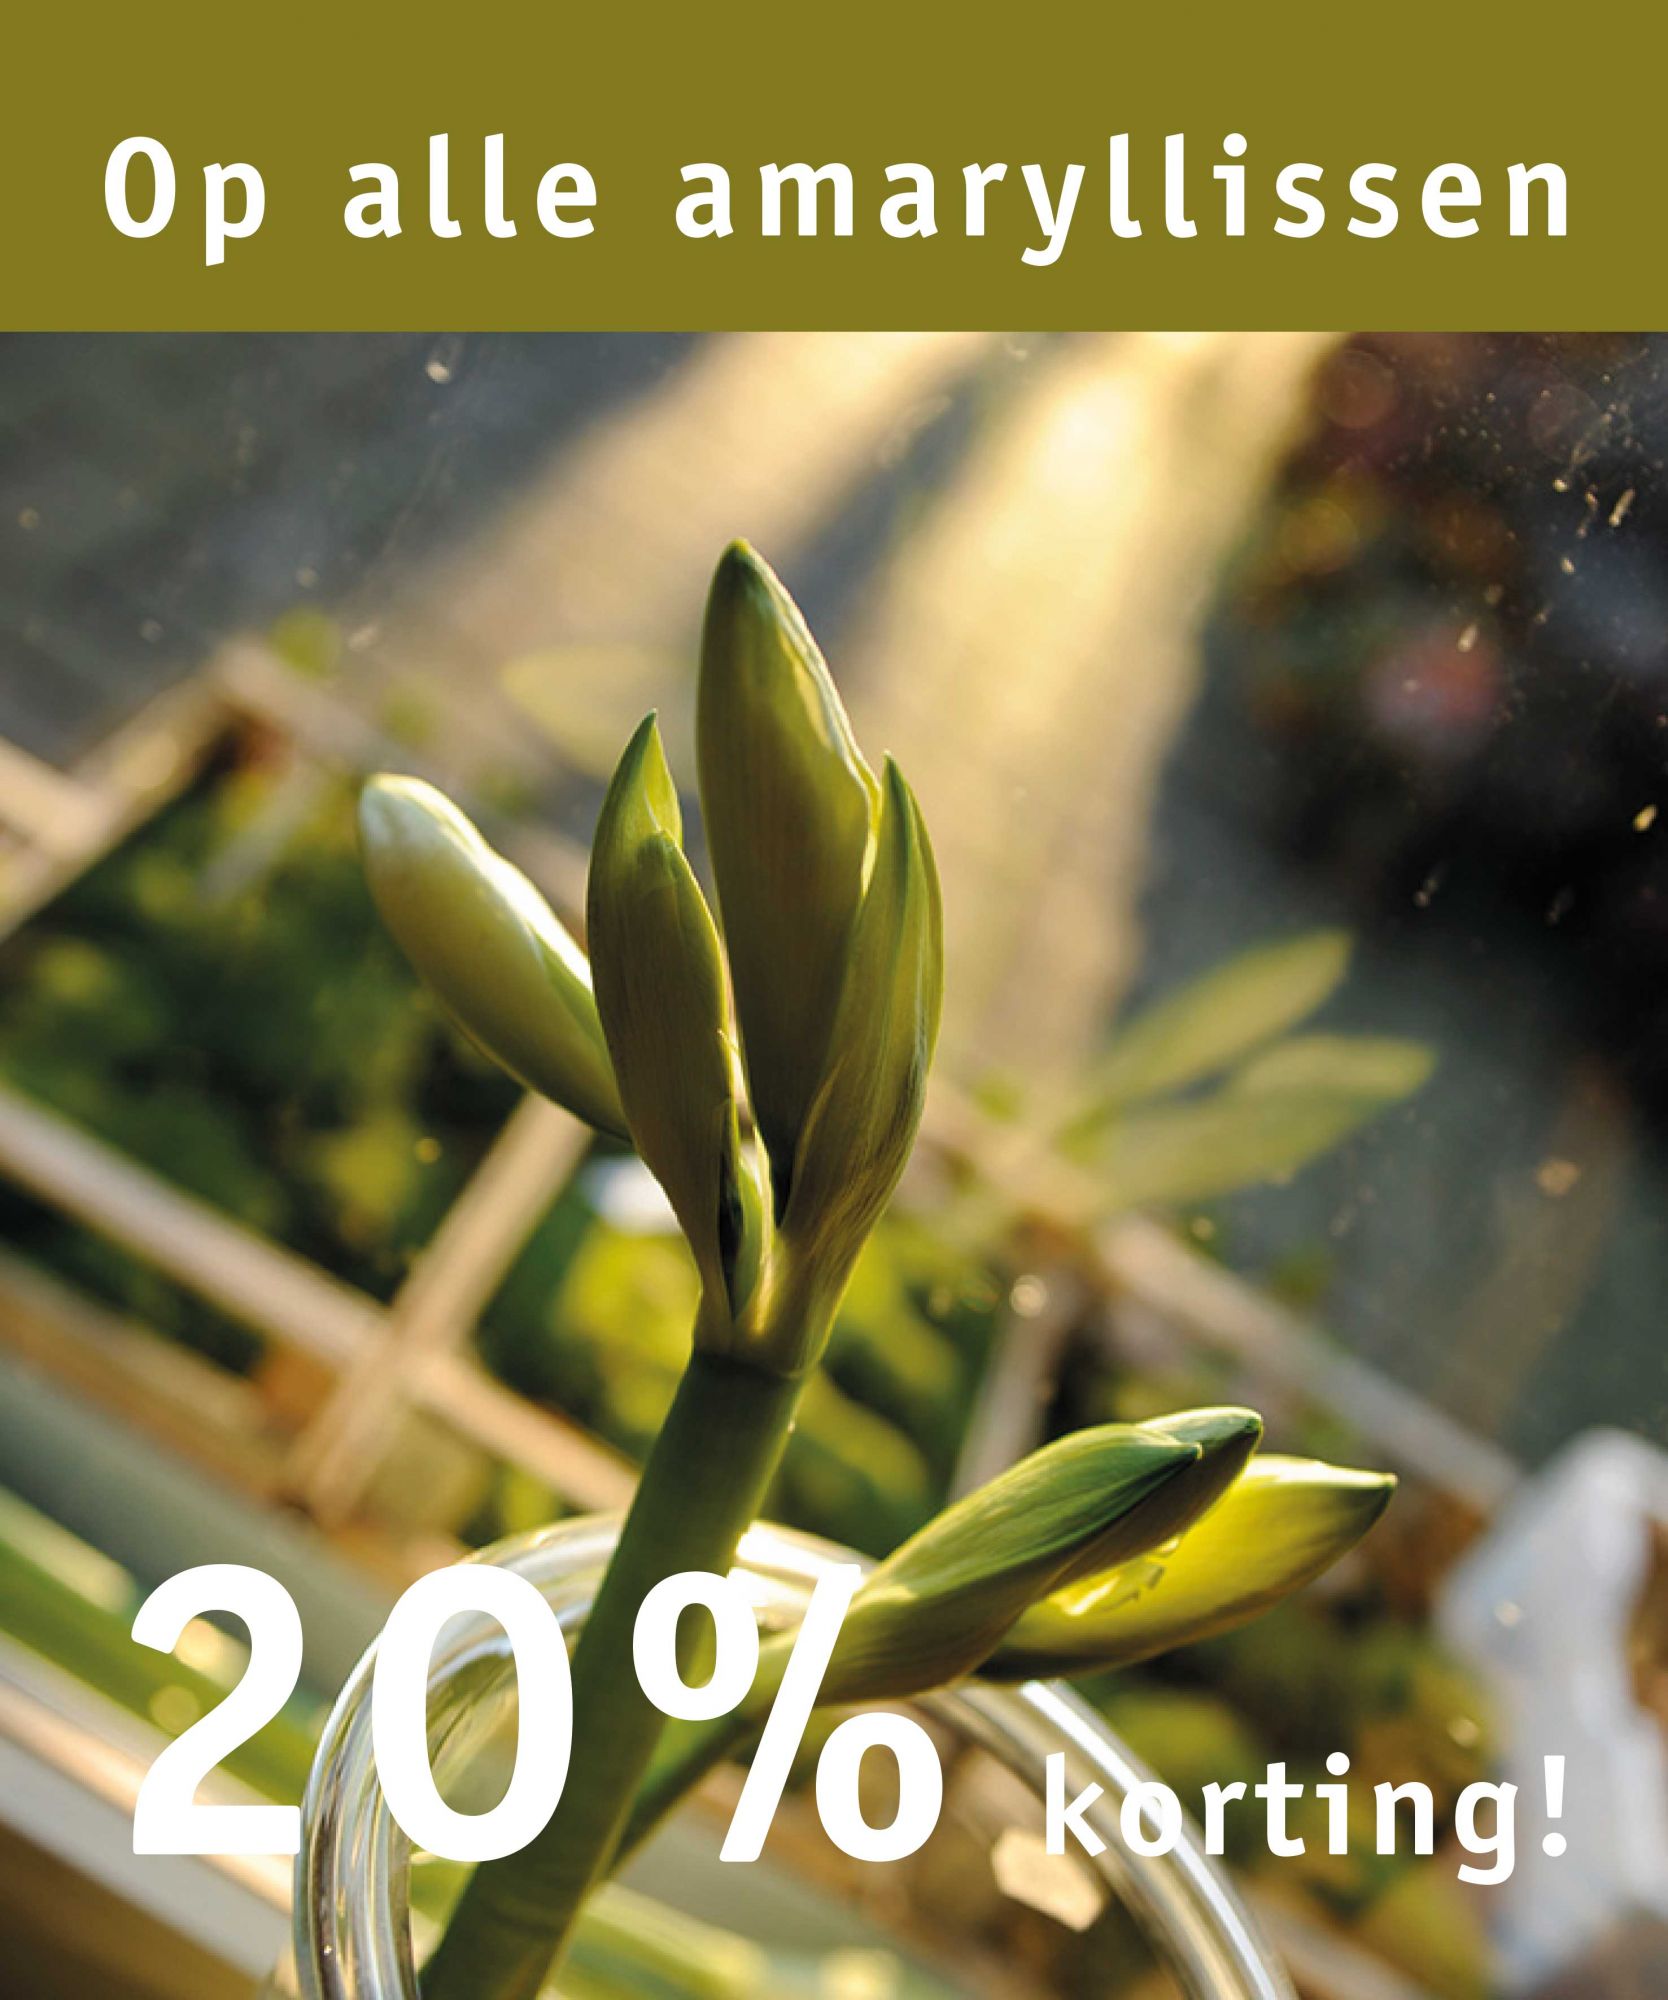 20% korting op alle amaryllissen, zolang de voorraad strekt.